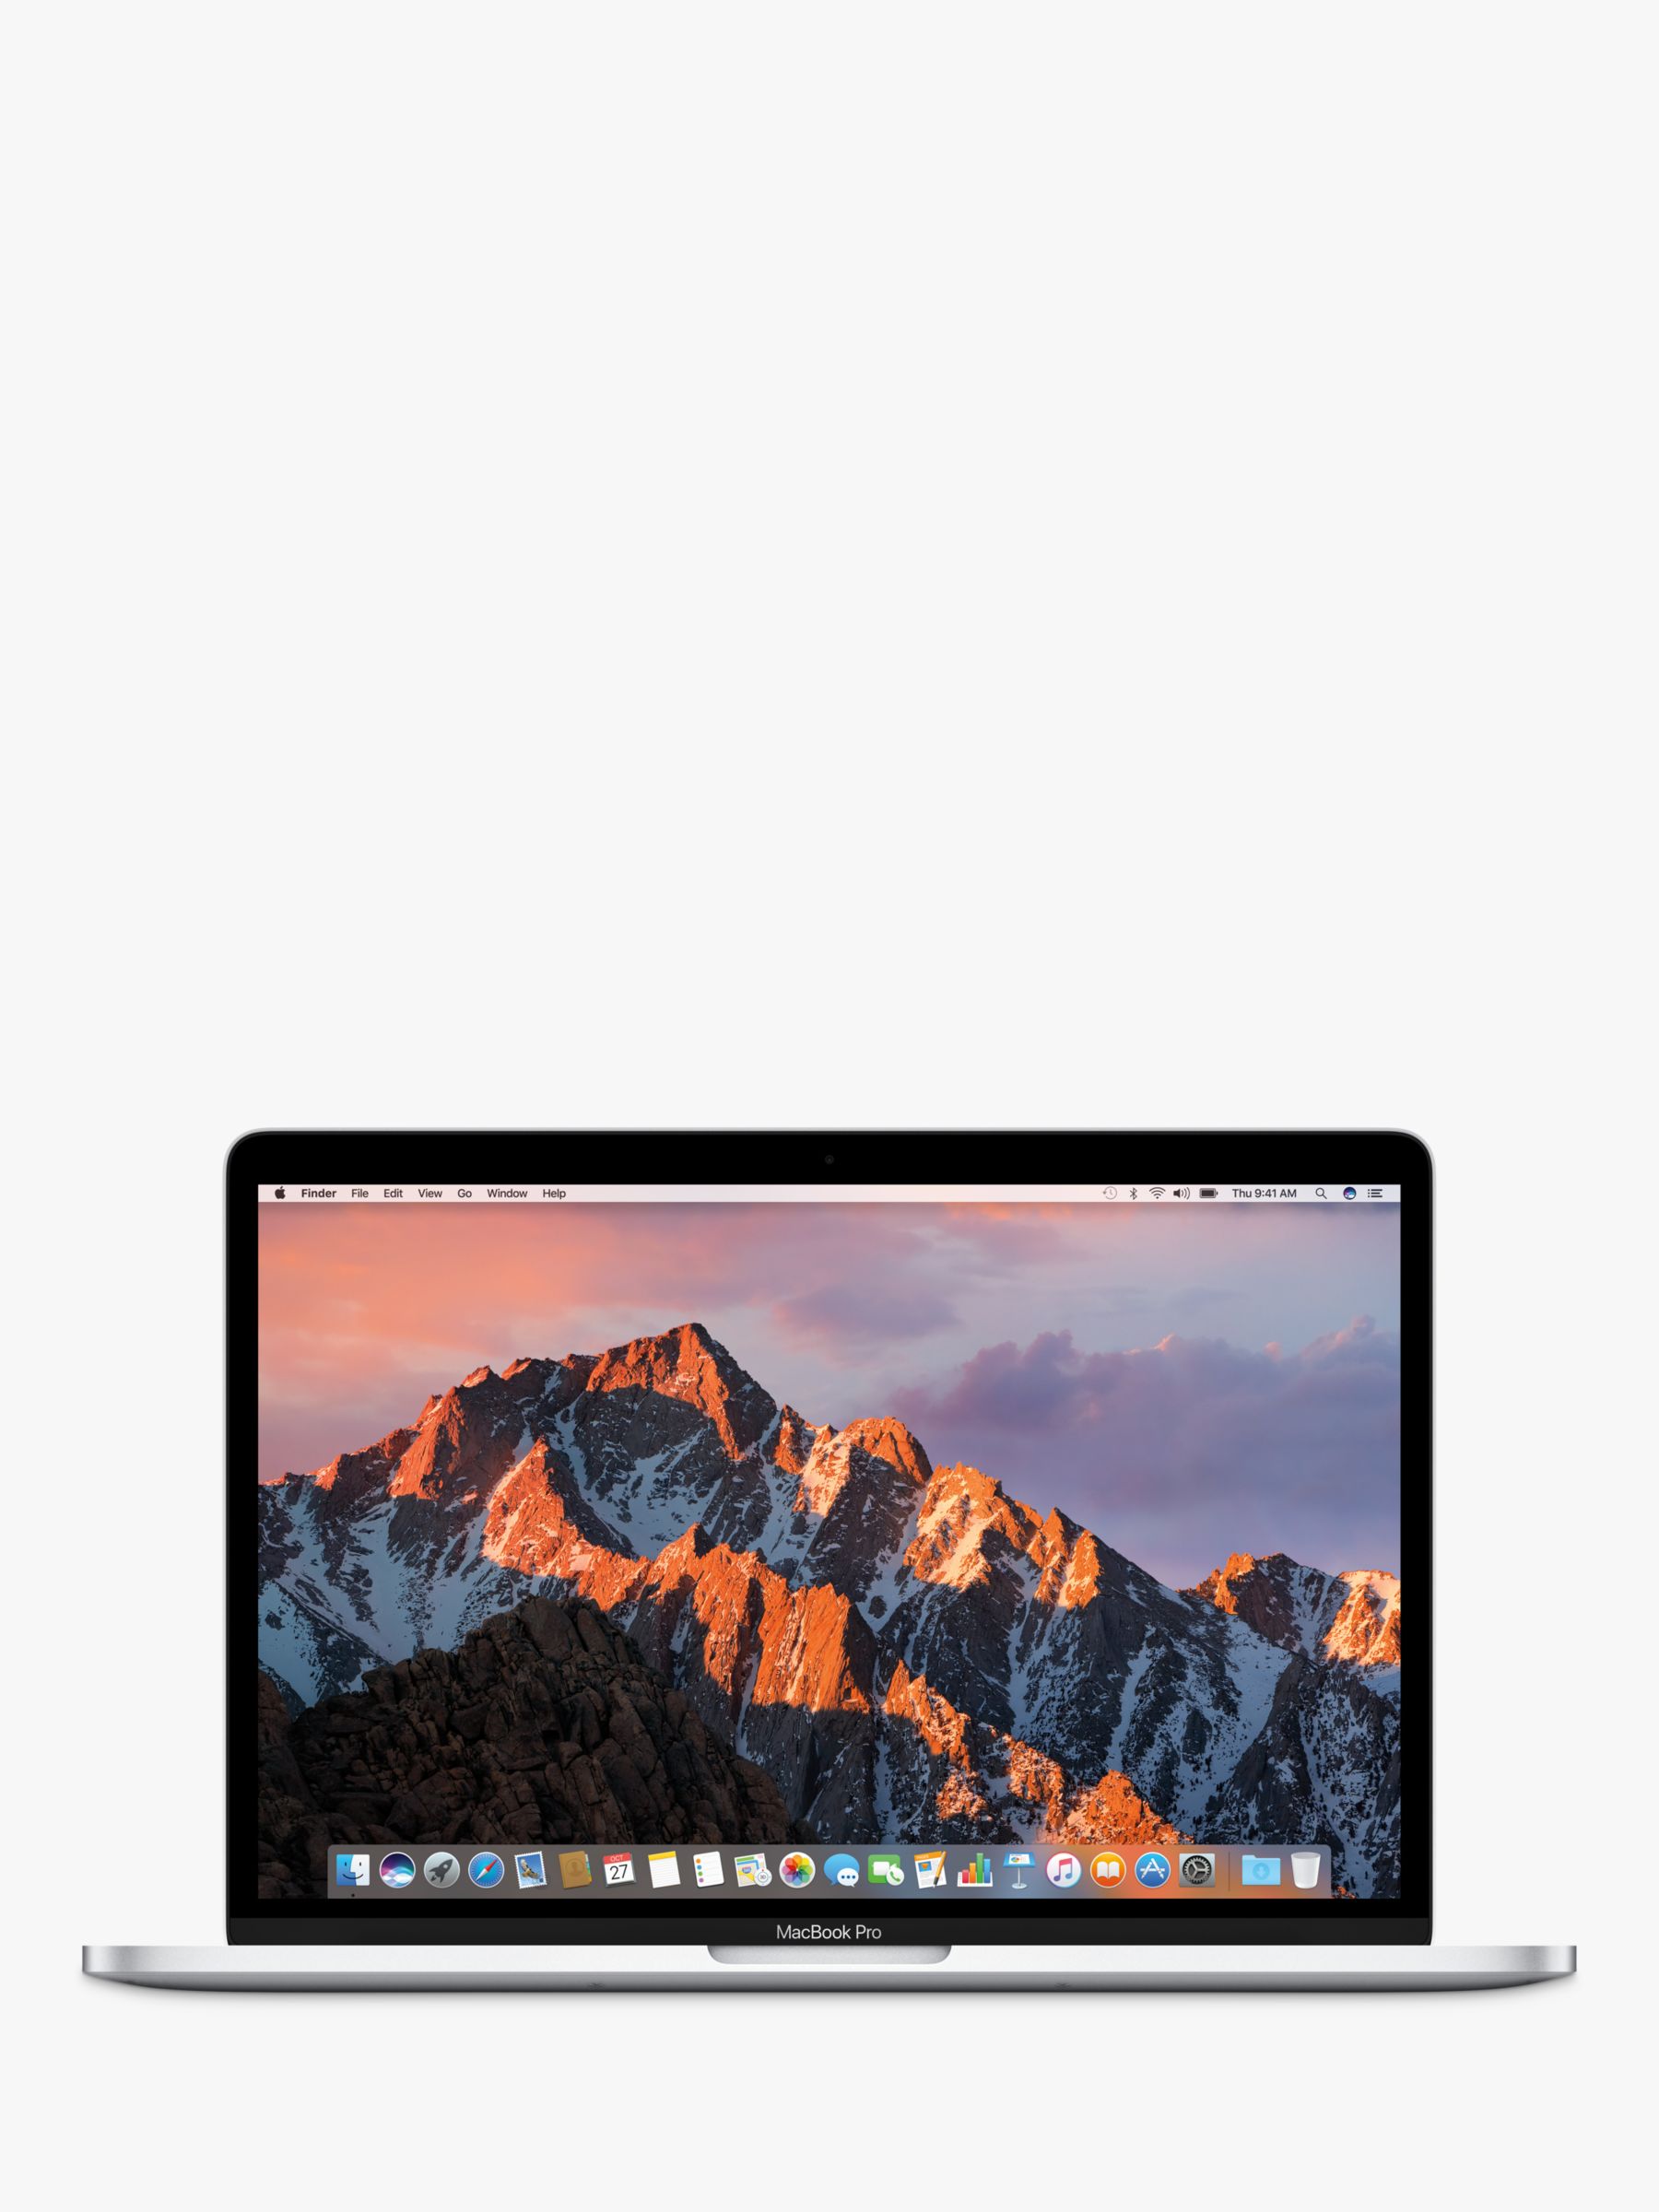 2017 Apple MacBook Pro 13